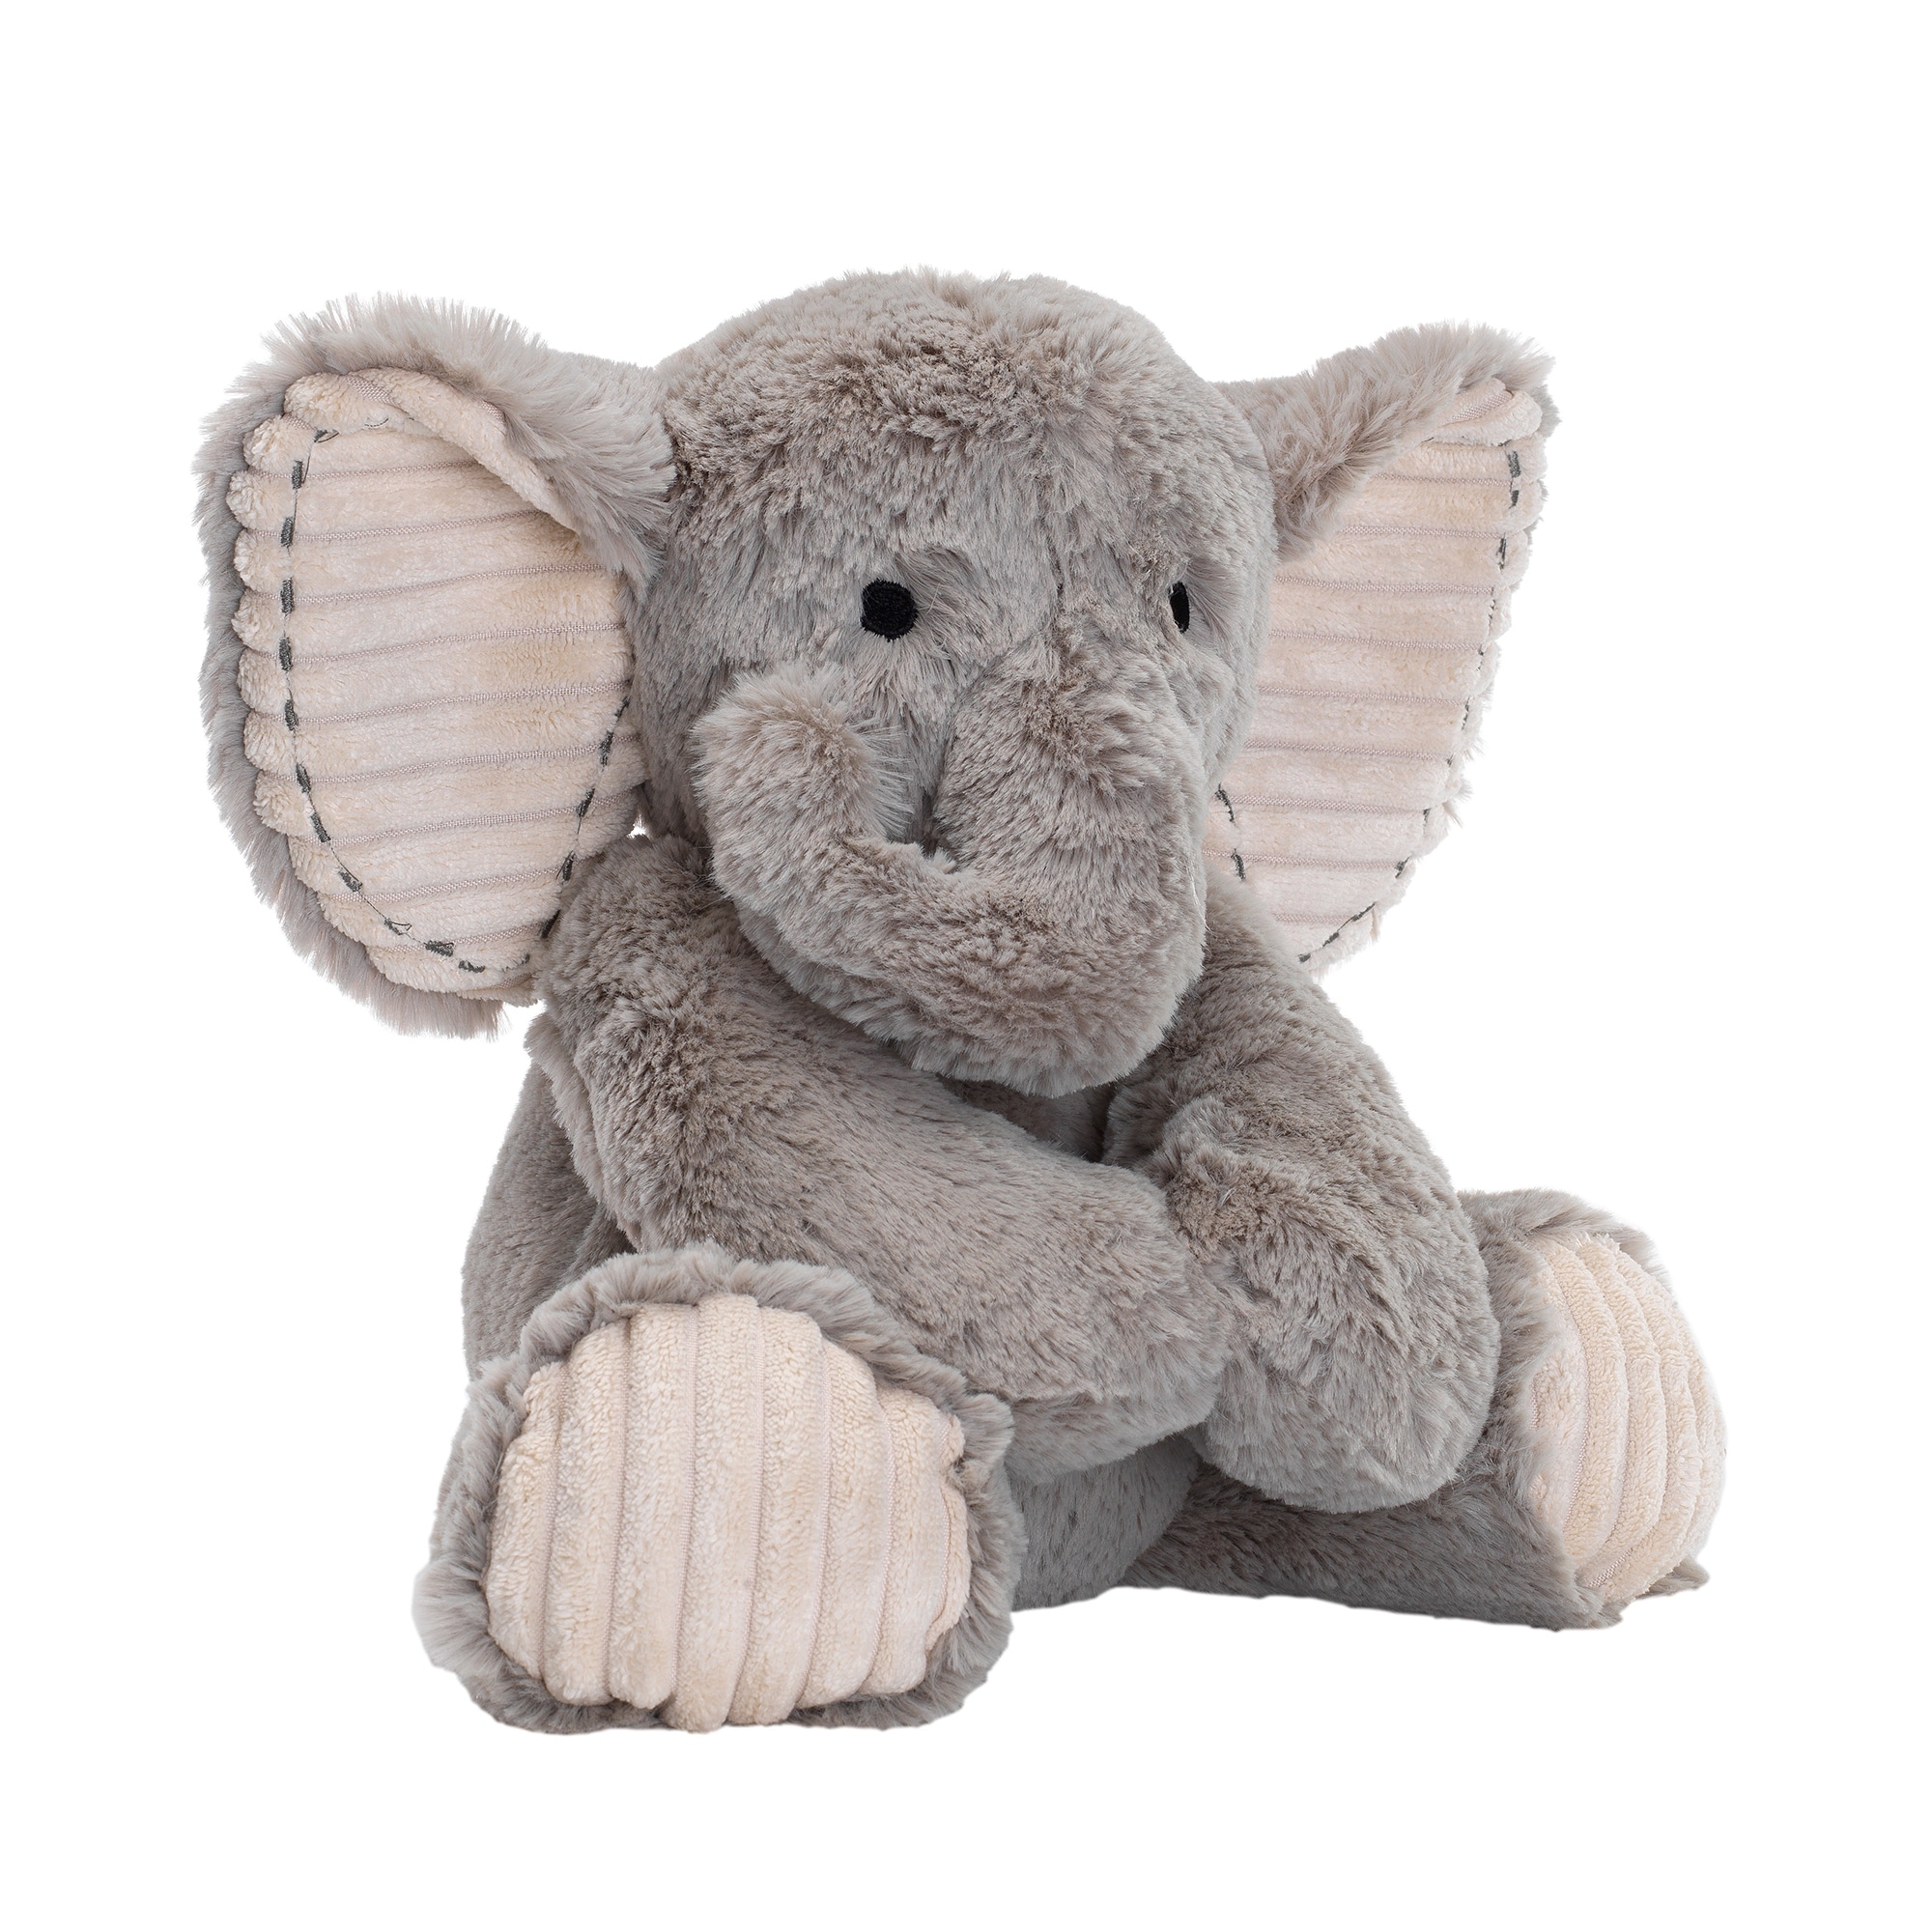 elephant stuffed animal large